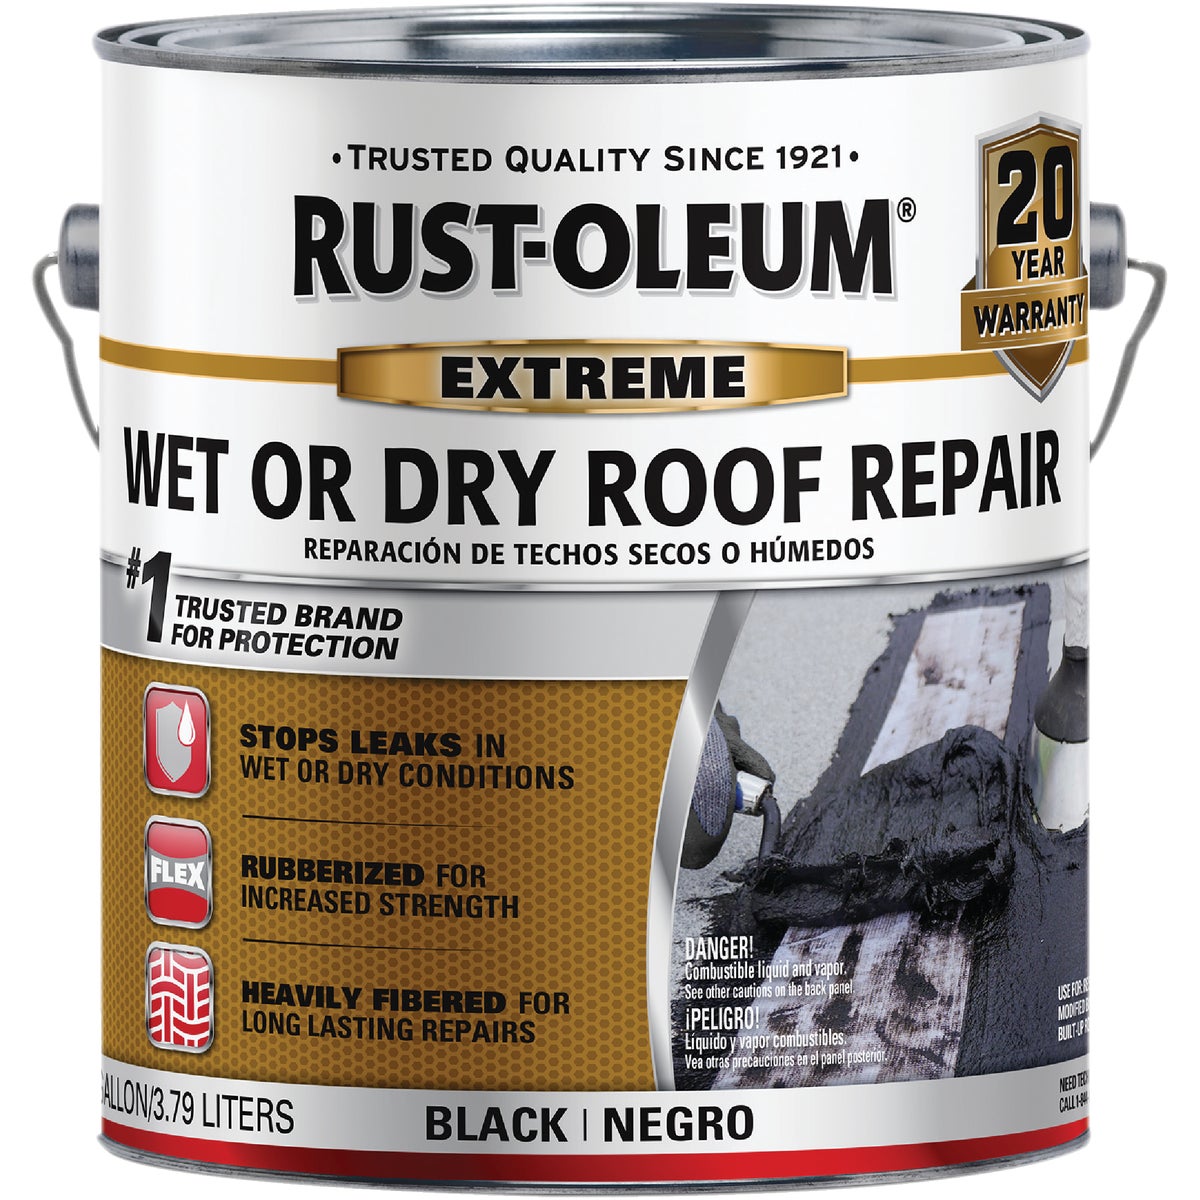 Rust-Oleum 1 Gal. Black Extreme Wet or Dry Roof Repair